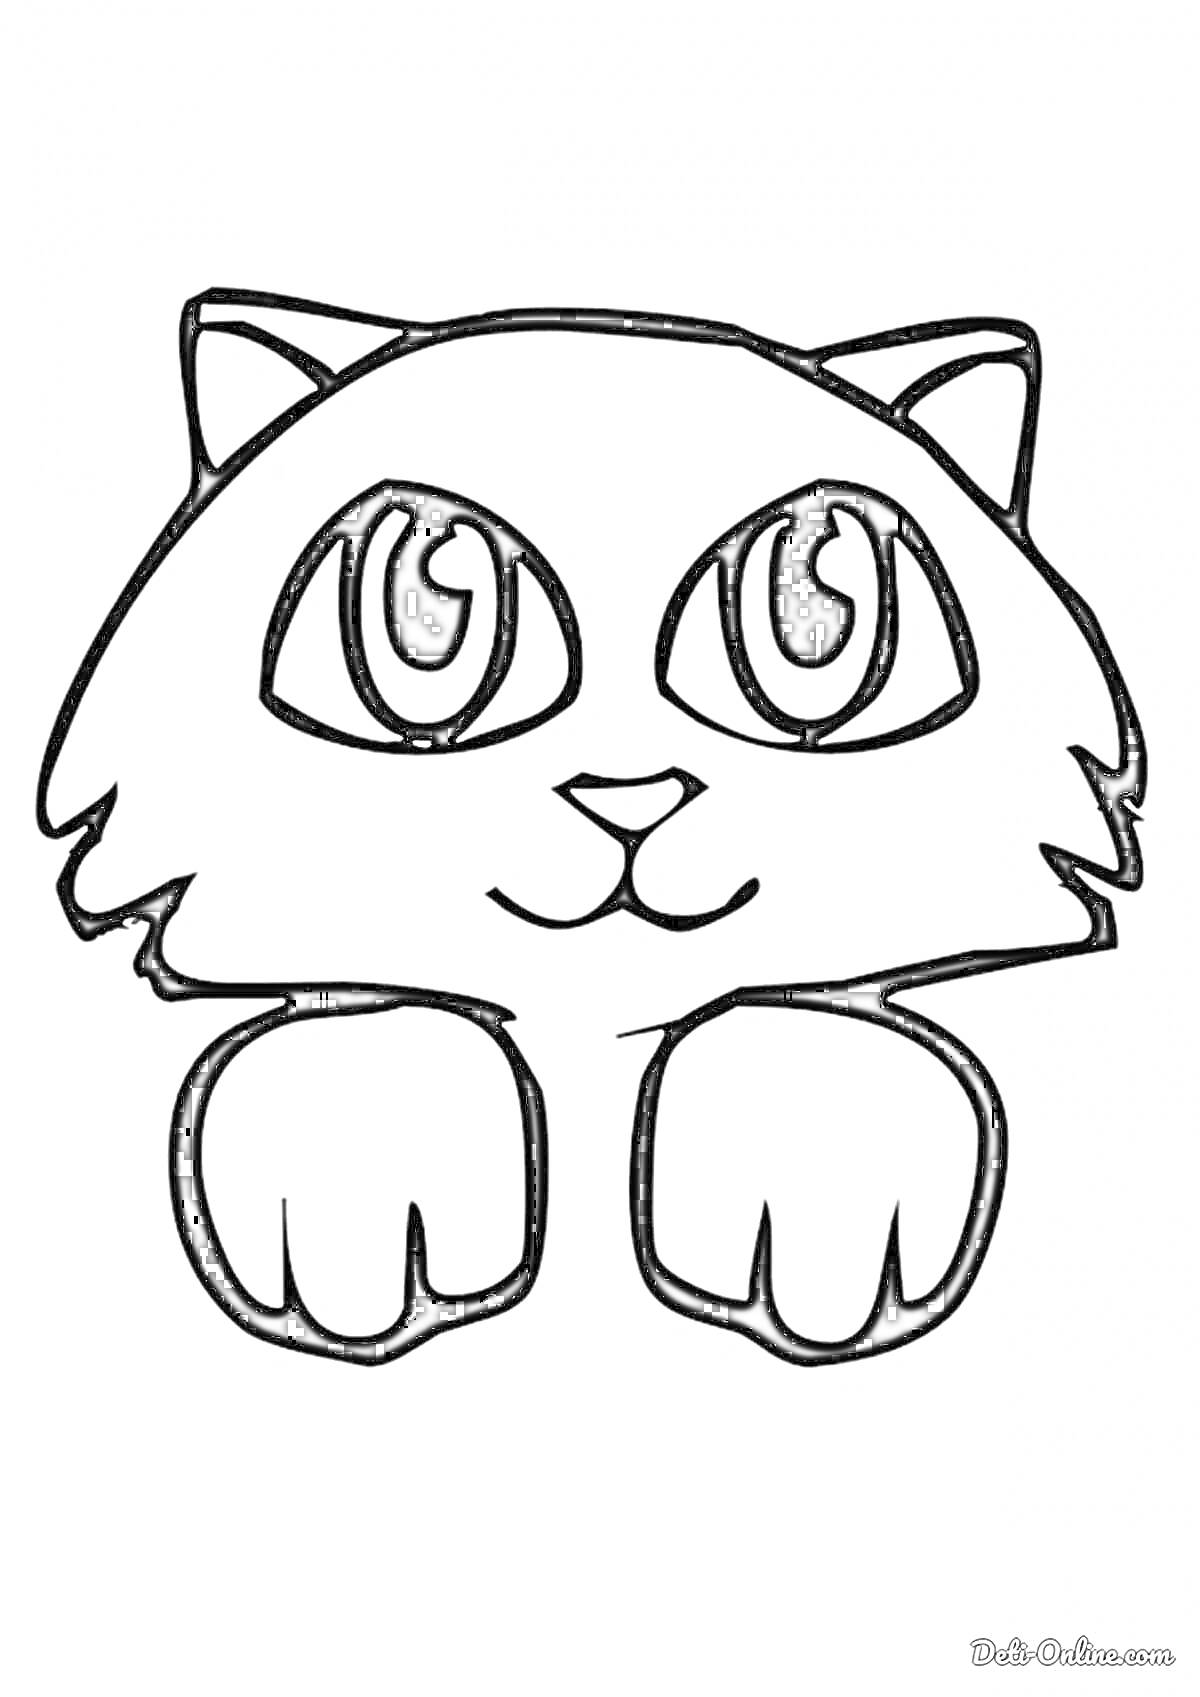 Раскраска Кот с большими глазами и лапками, смотрящий вперёд